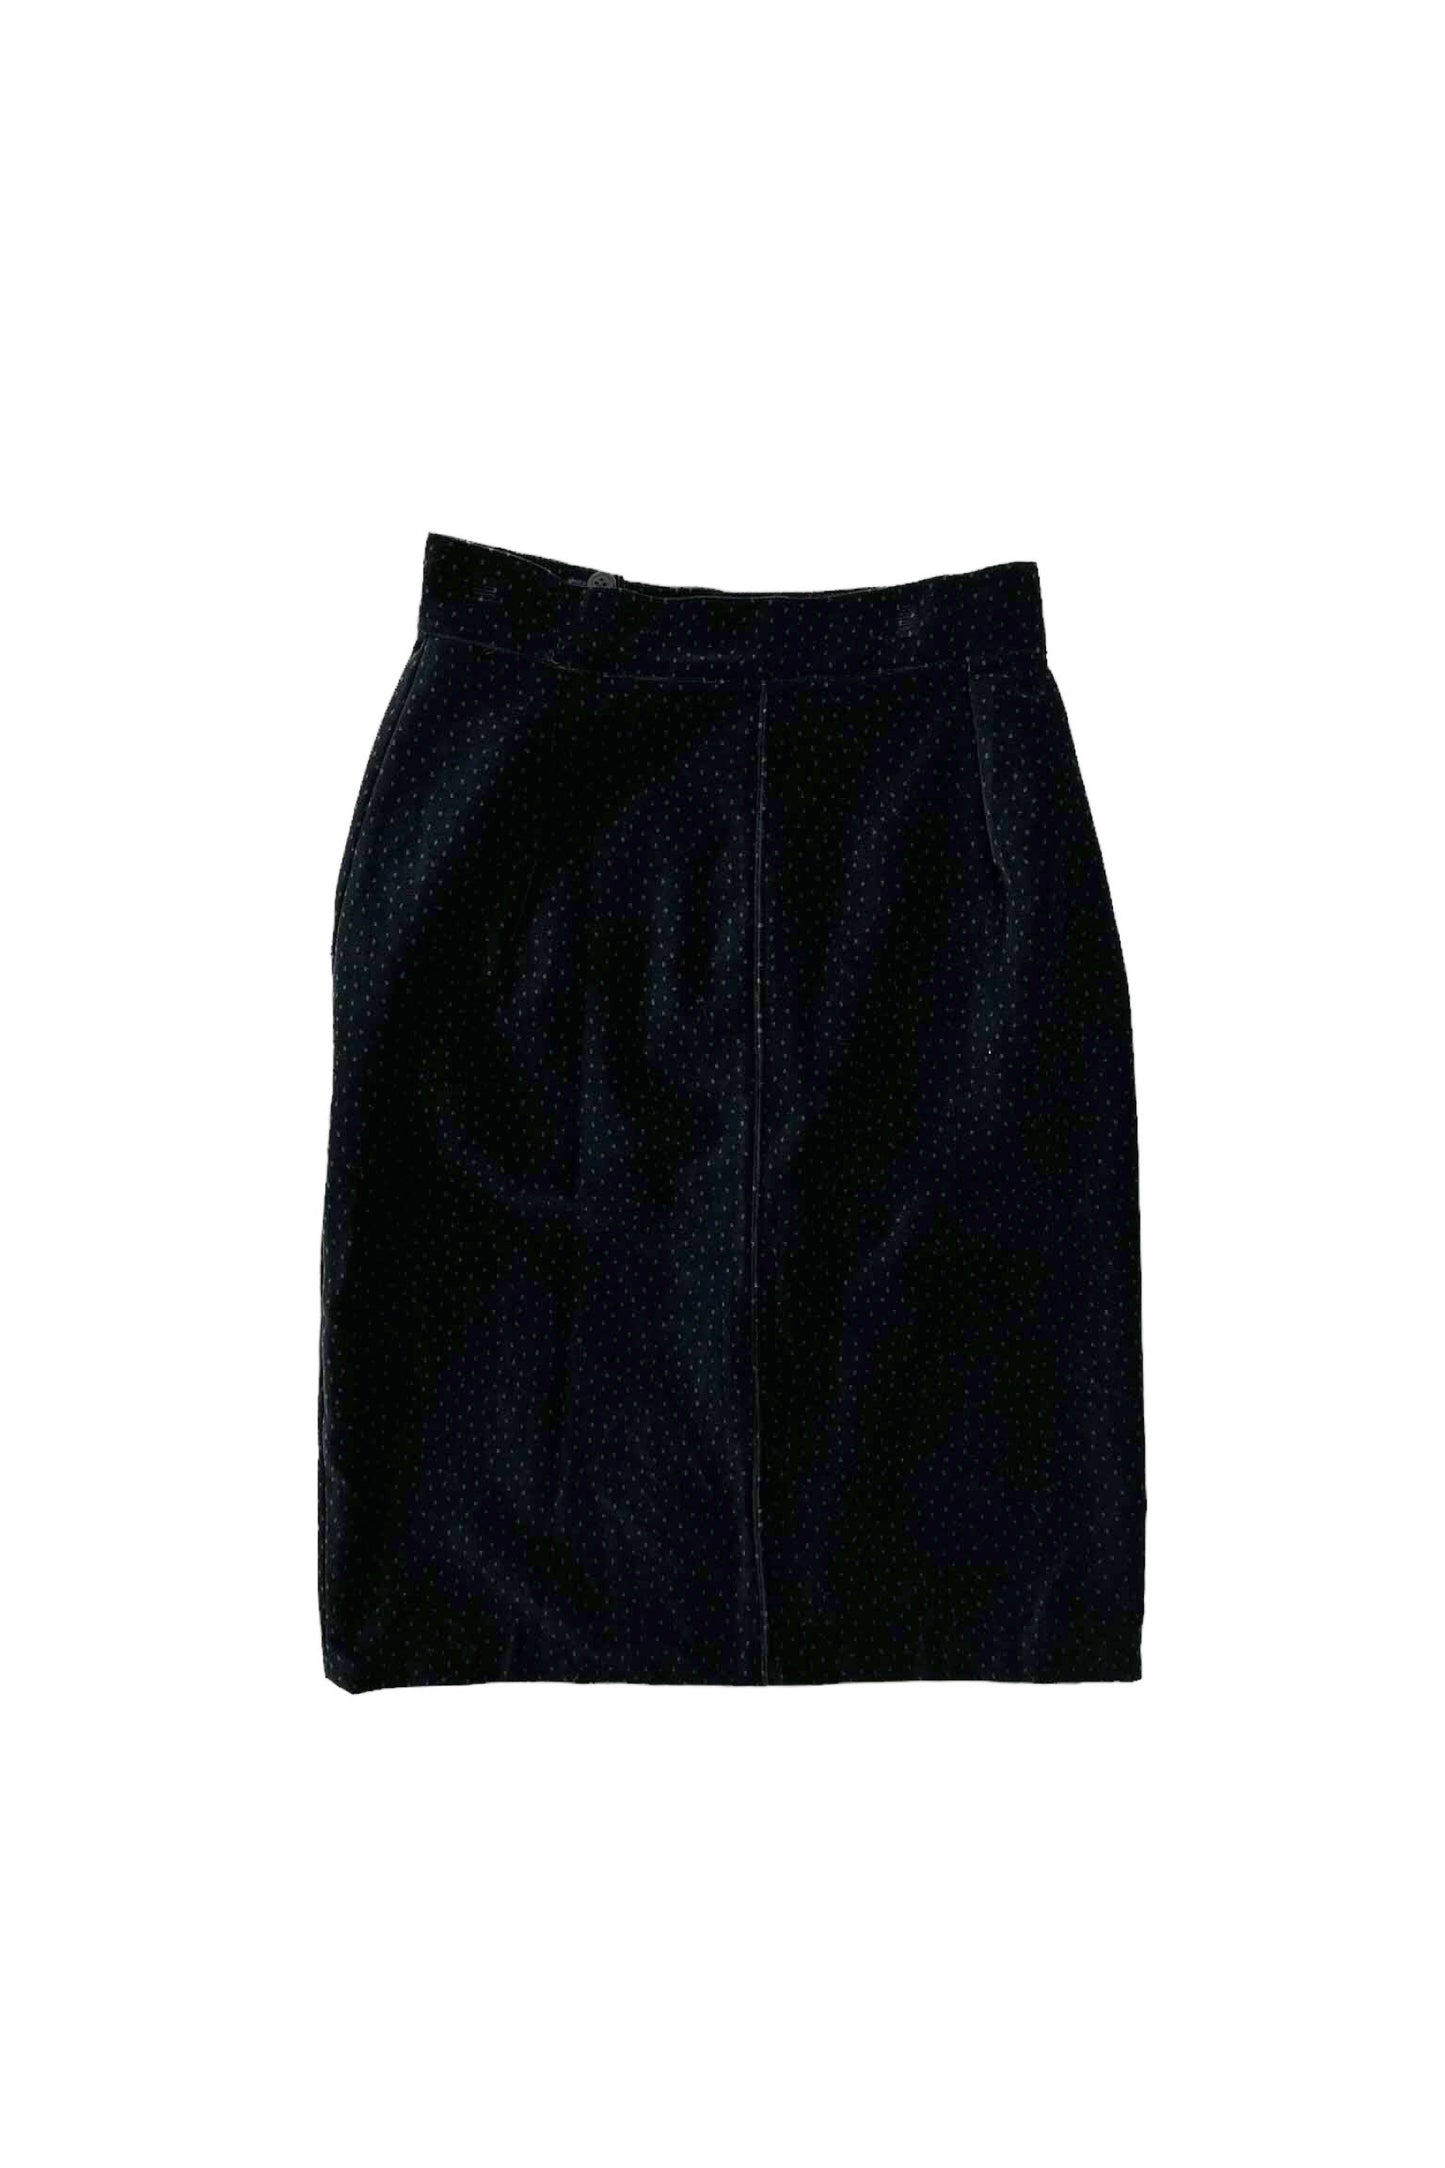 80's Made in ITALY Black dot velor skirt